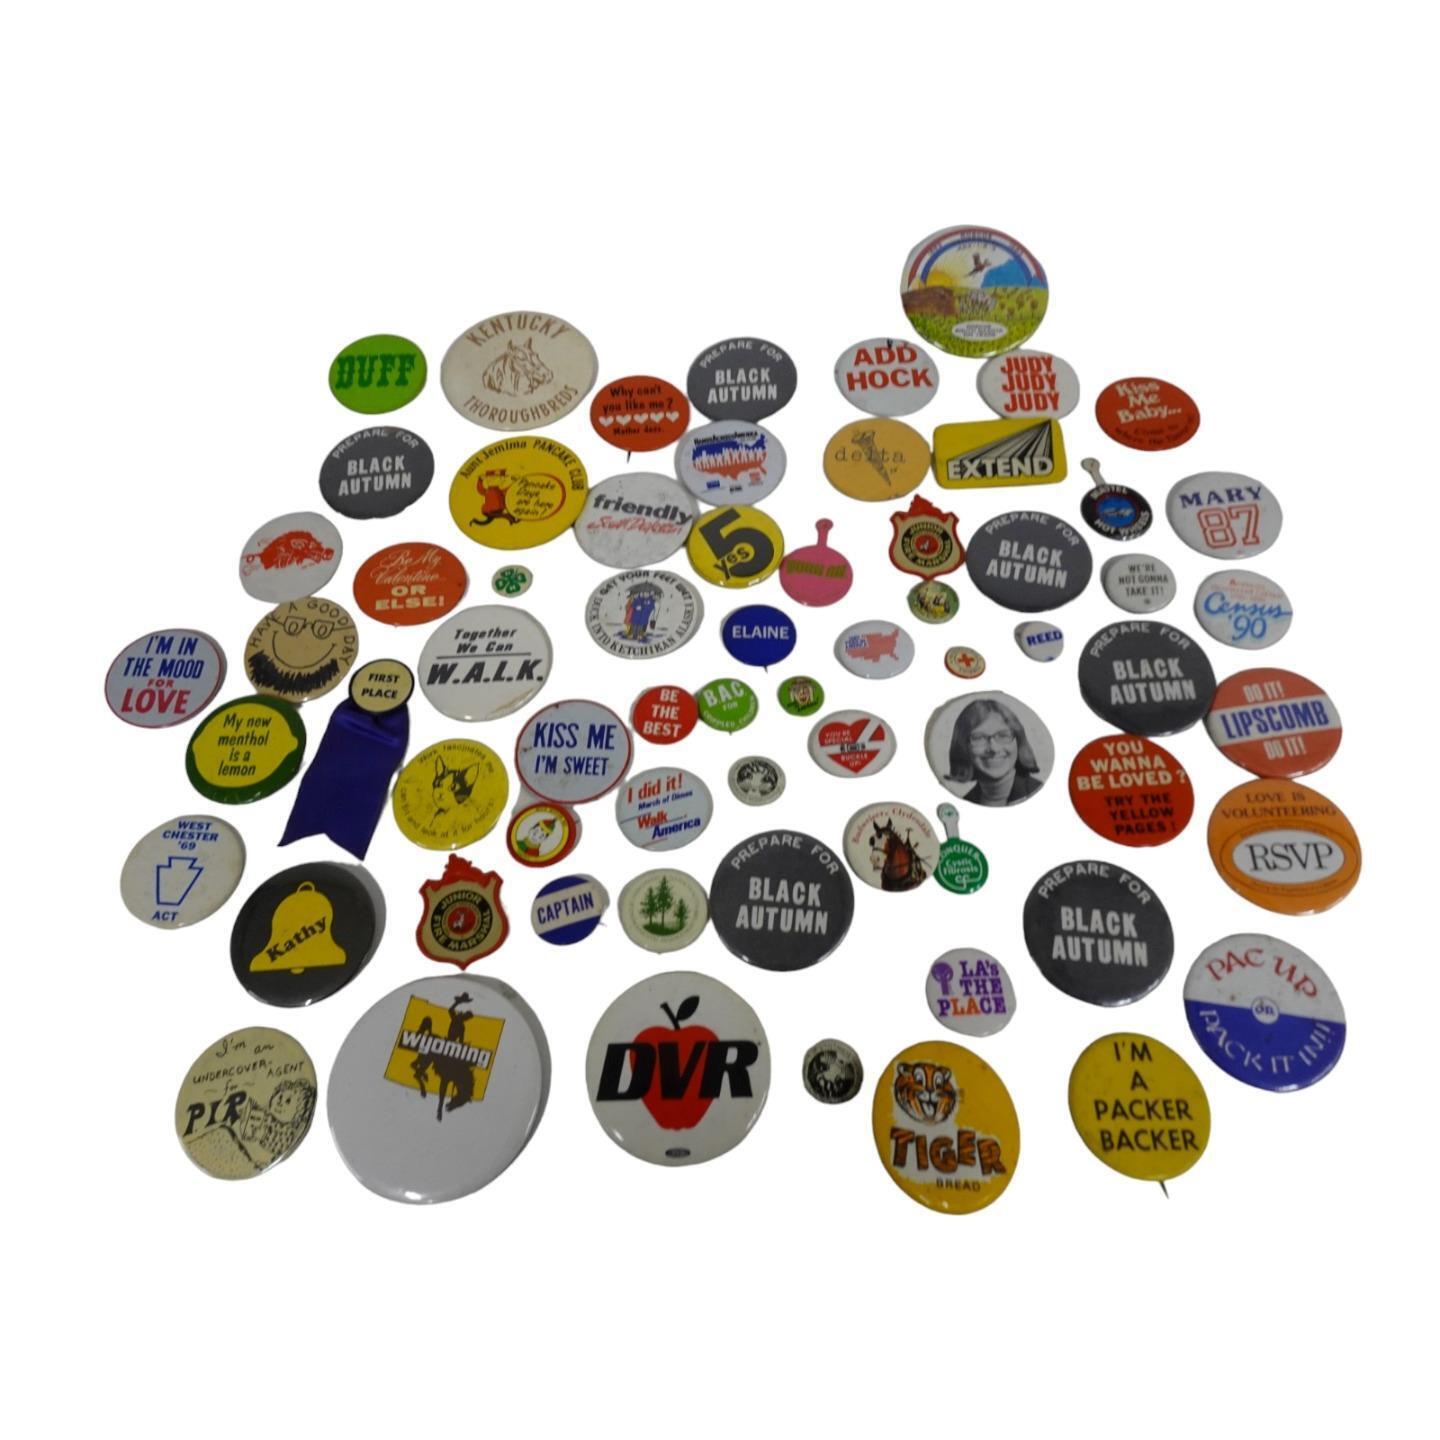 Mixed Lot 60 Pins Buttons Mattel Wyoming Black Autumn Add Hock Extend Packer